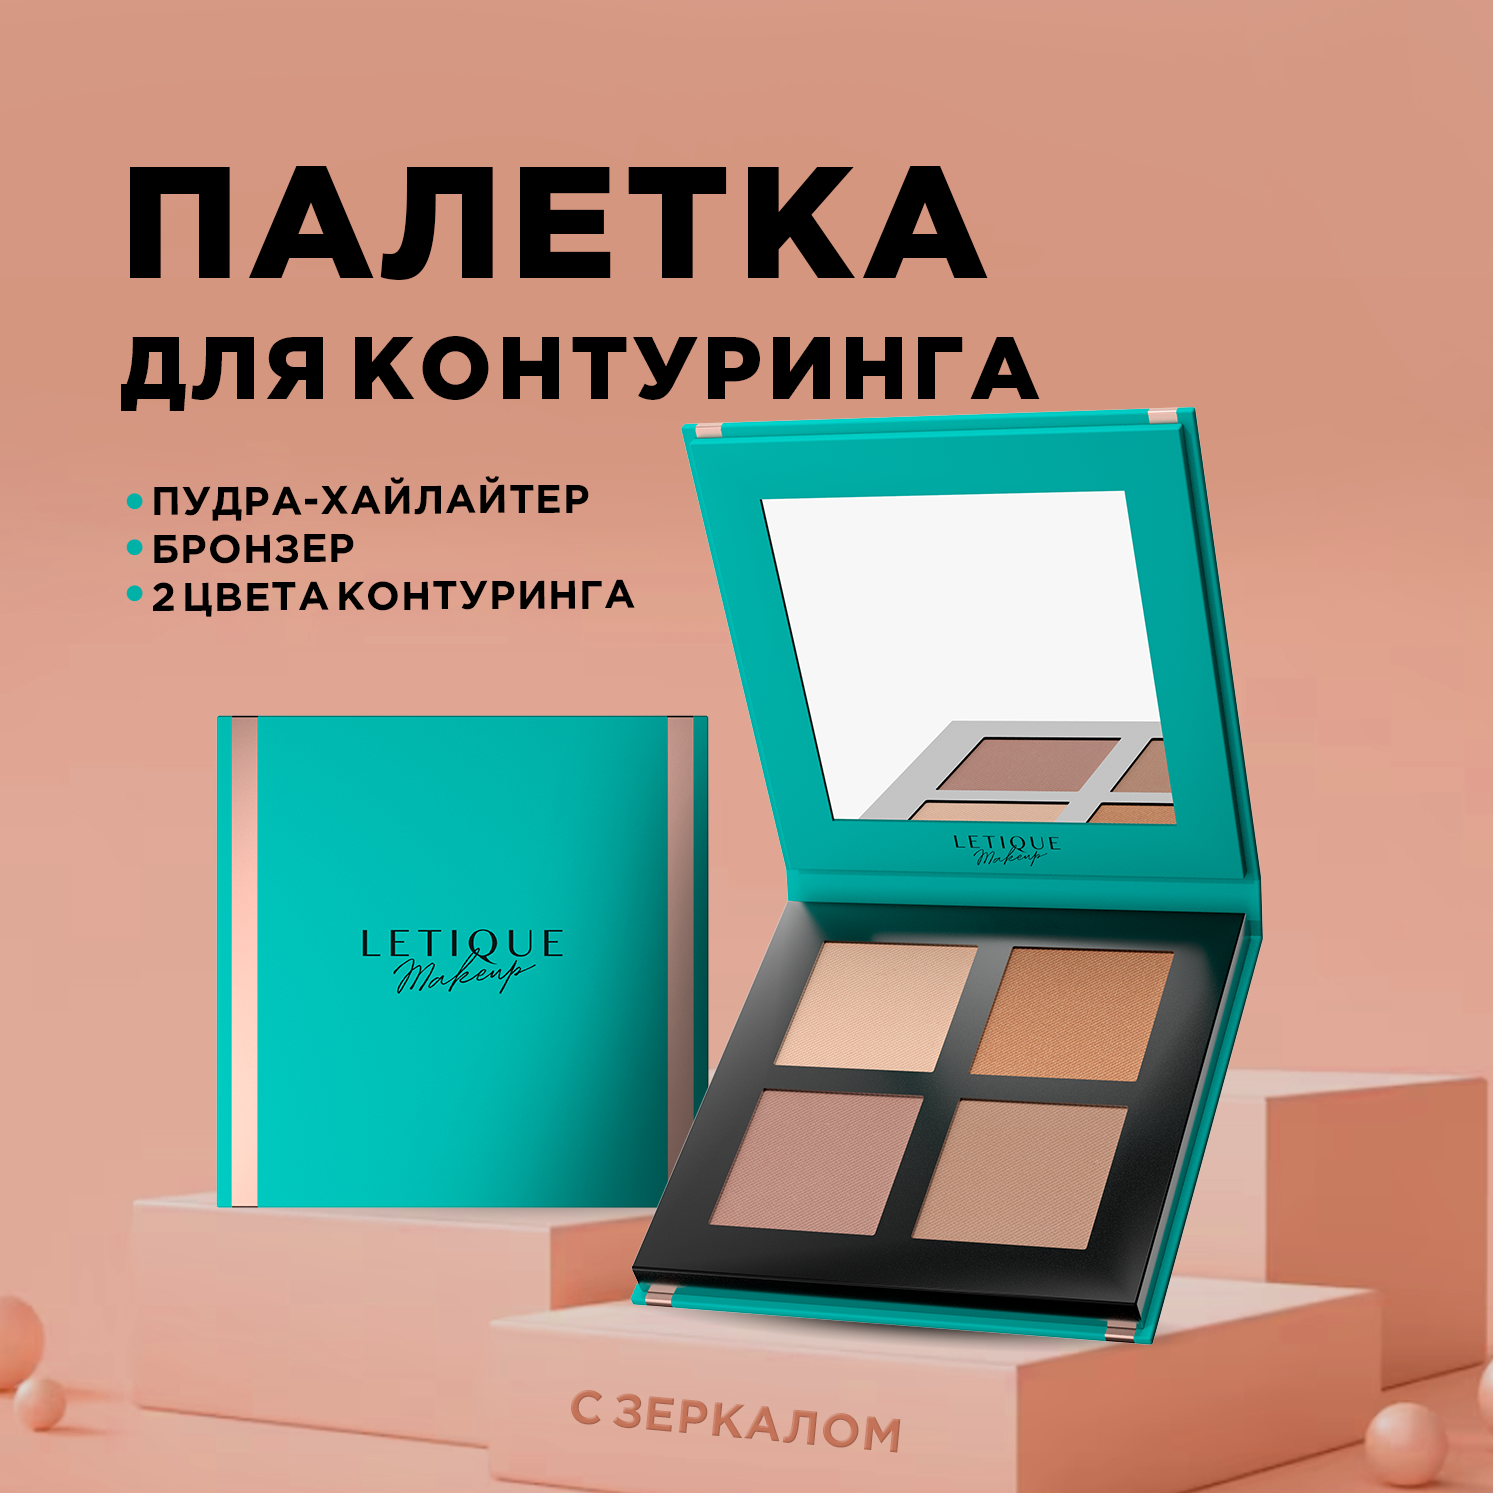 Палетка для моделирования лица Letique Cosmetics Glow and sculpt 12 г автомобильная карта нижний новгород нижегородская область